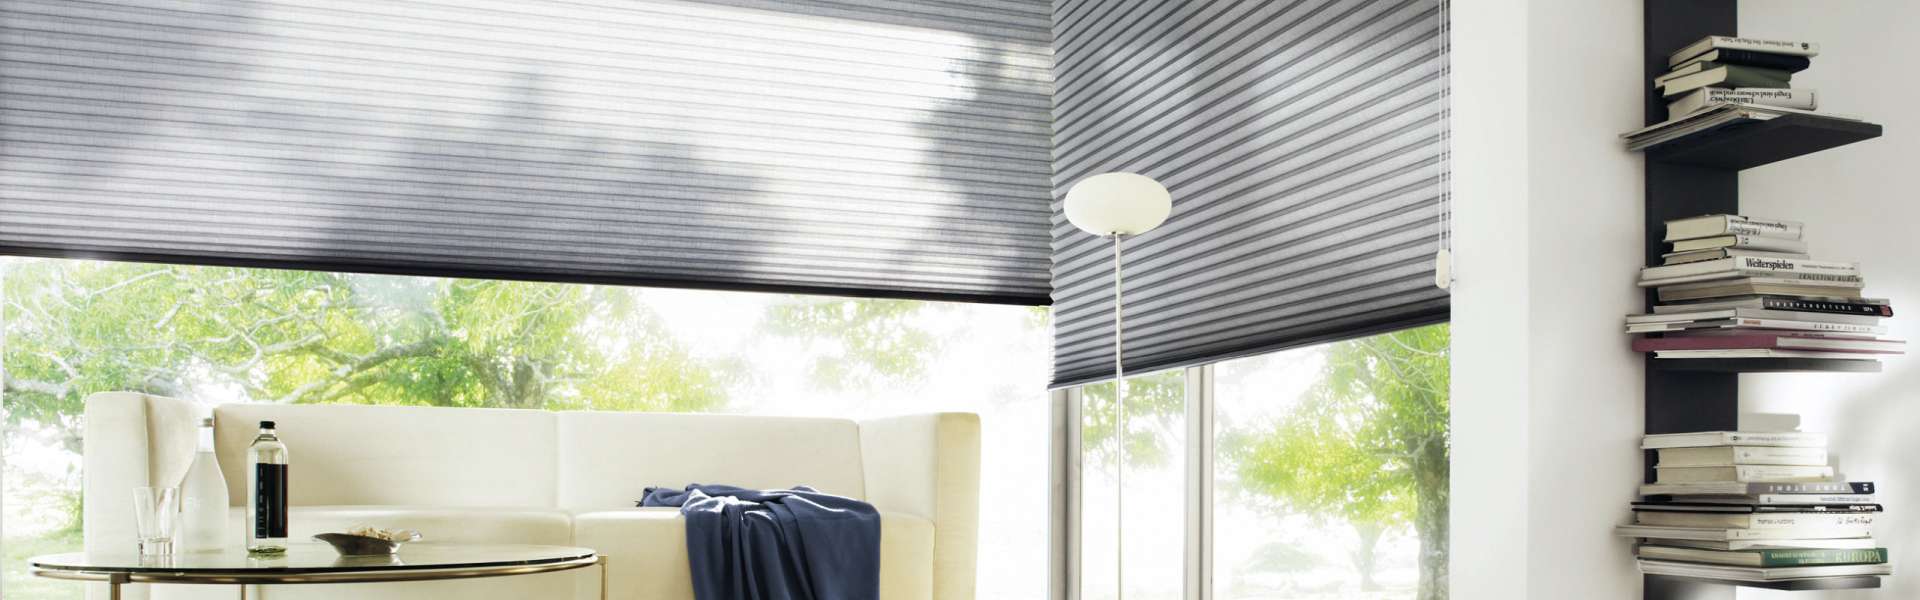 Bild Sonnenschutzanlage in Wohnzimmer grau